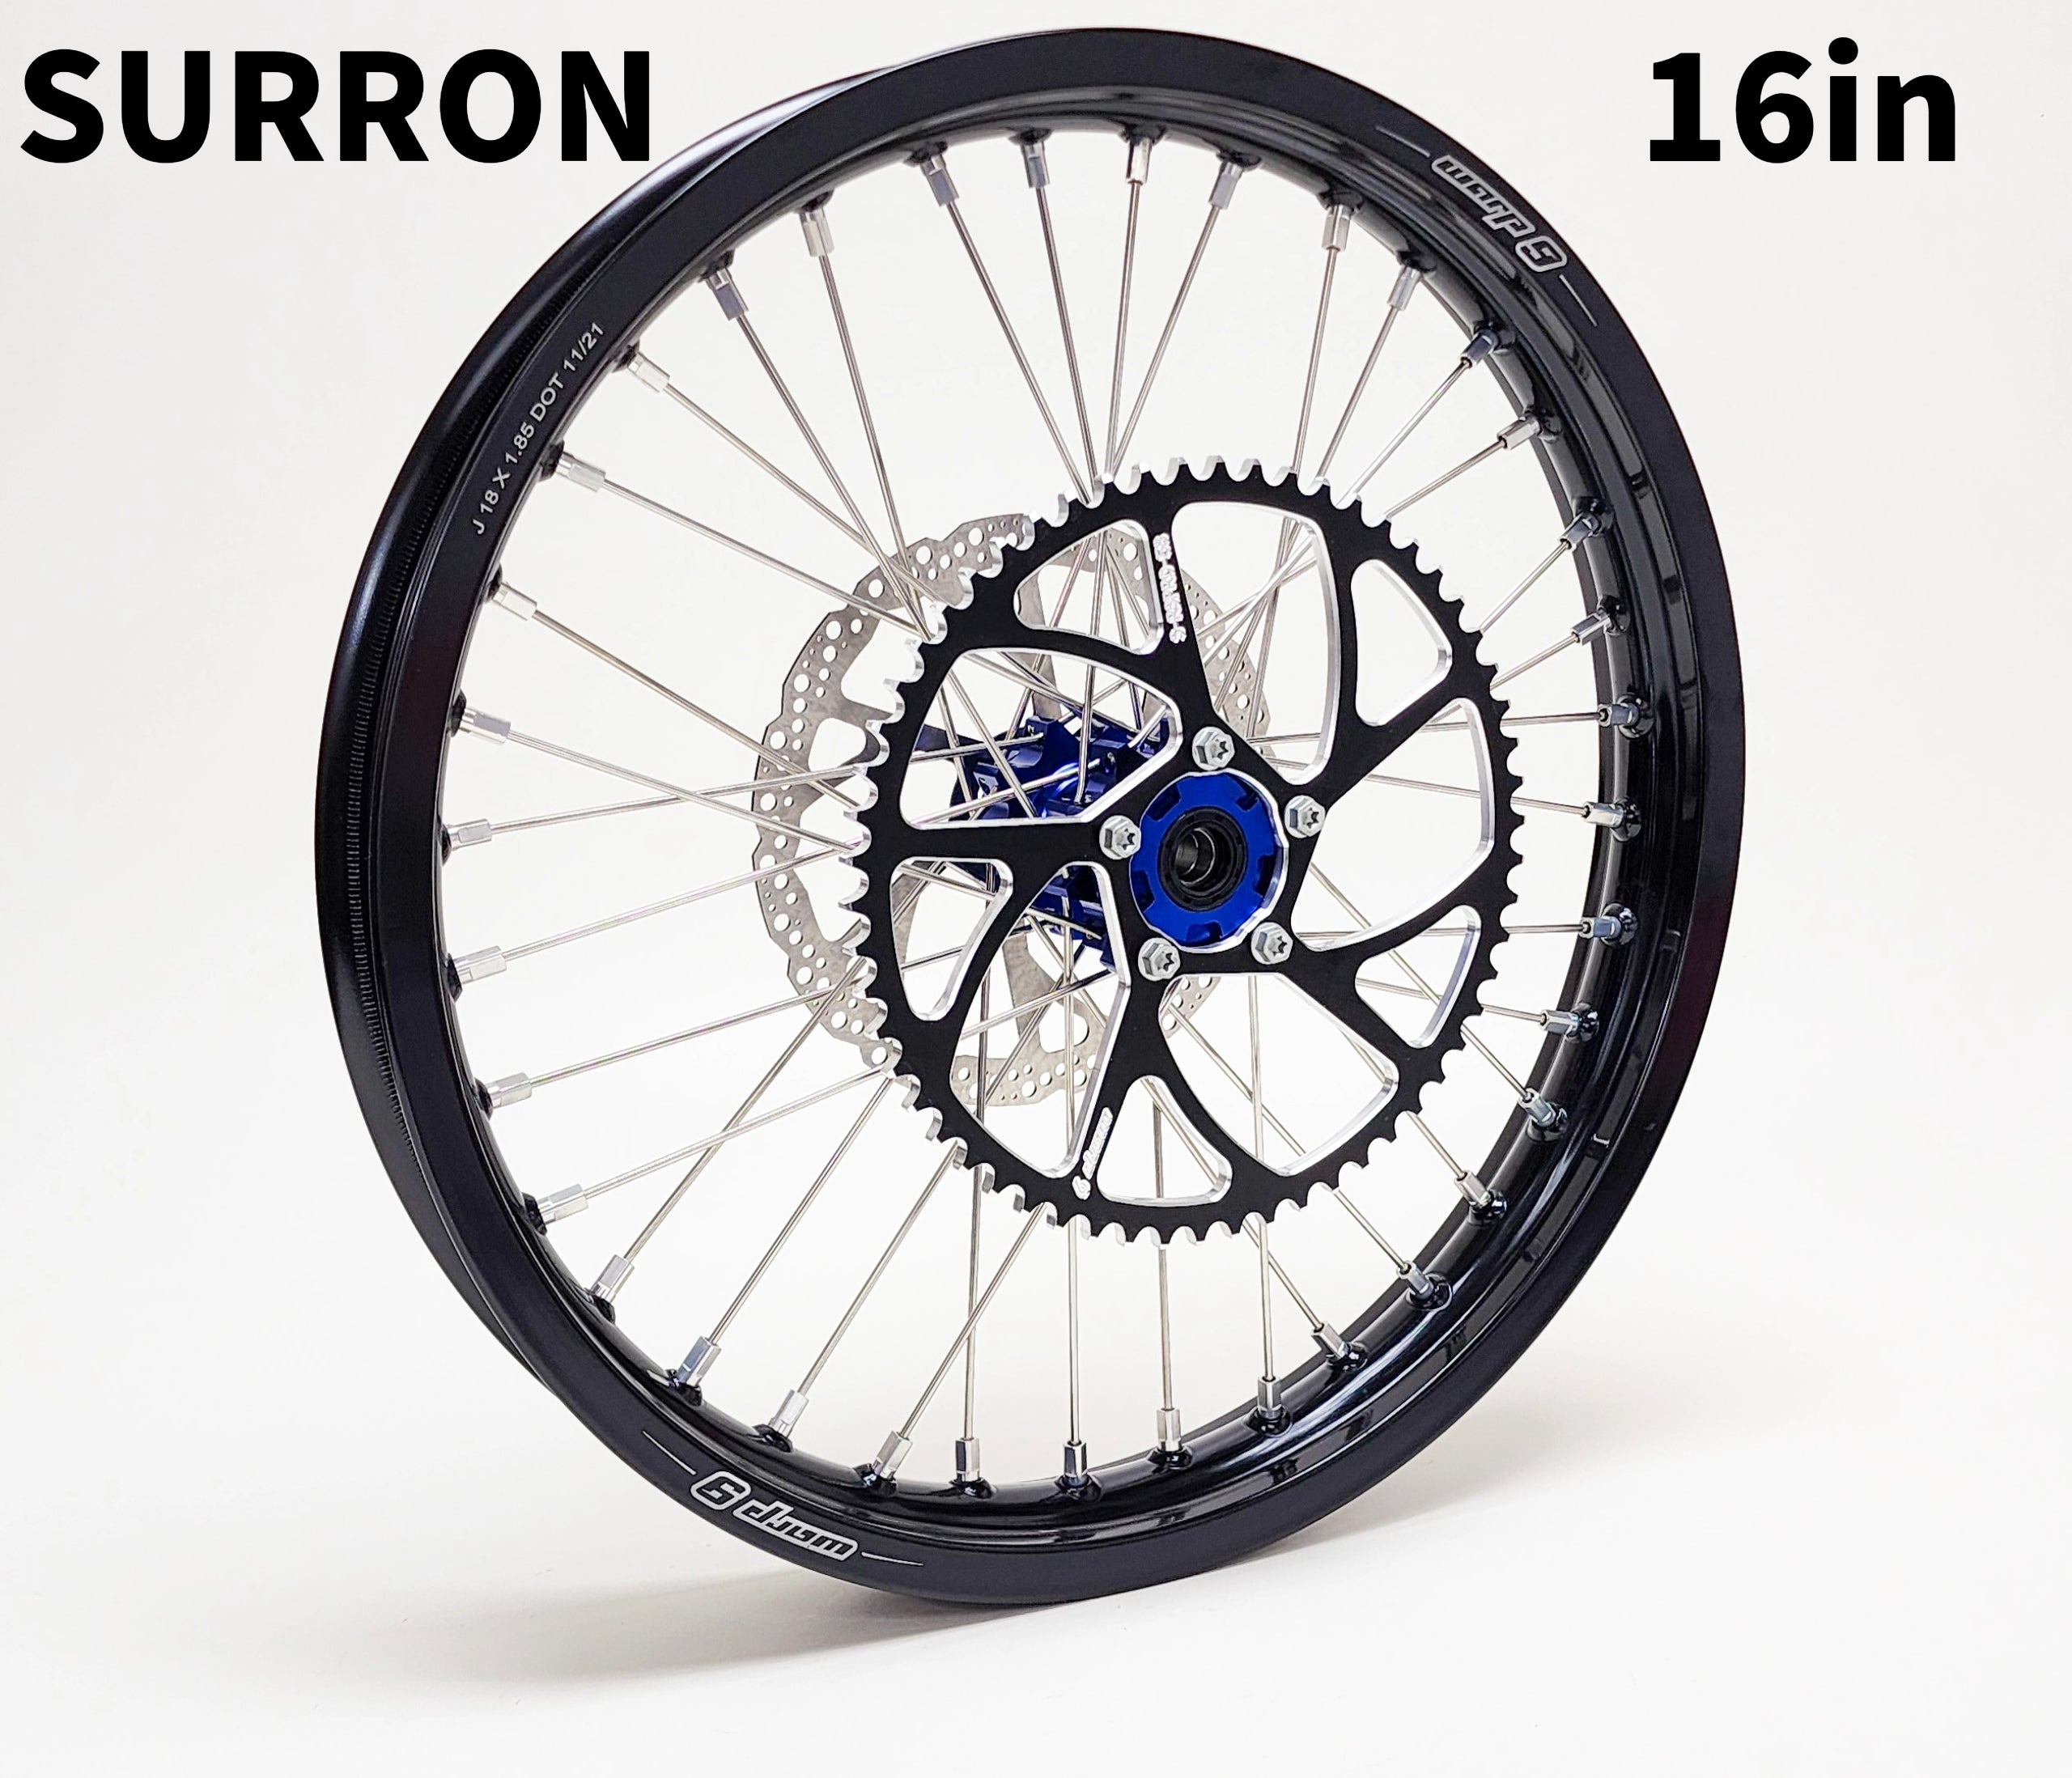 Warp 9  16in Upgraded Rear wheel for Surron light bee, E-ride Pro, 79 bike